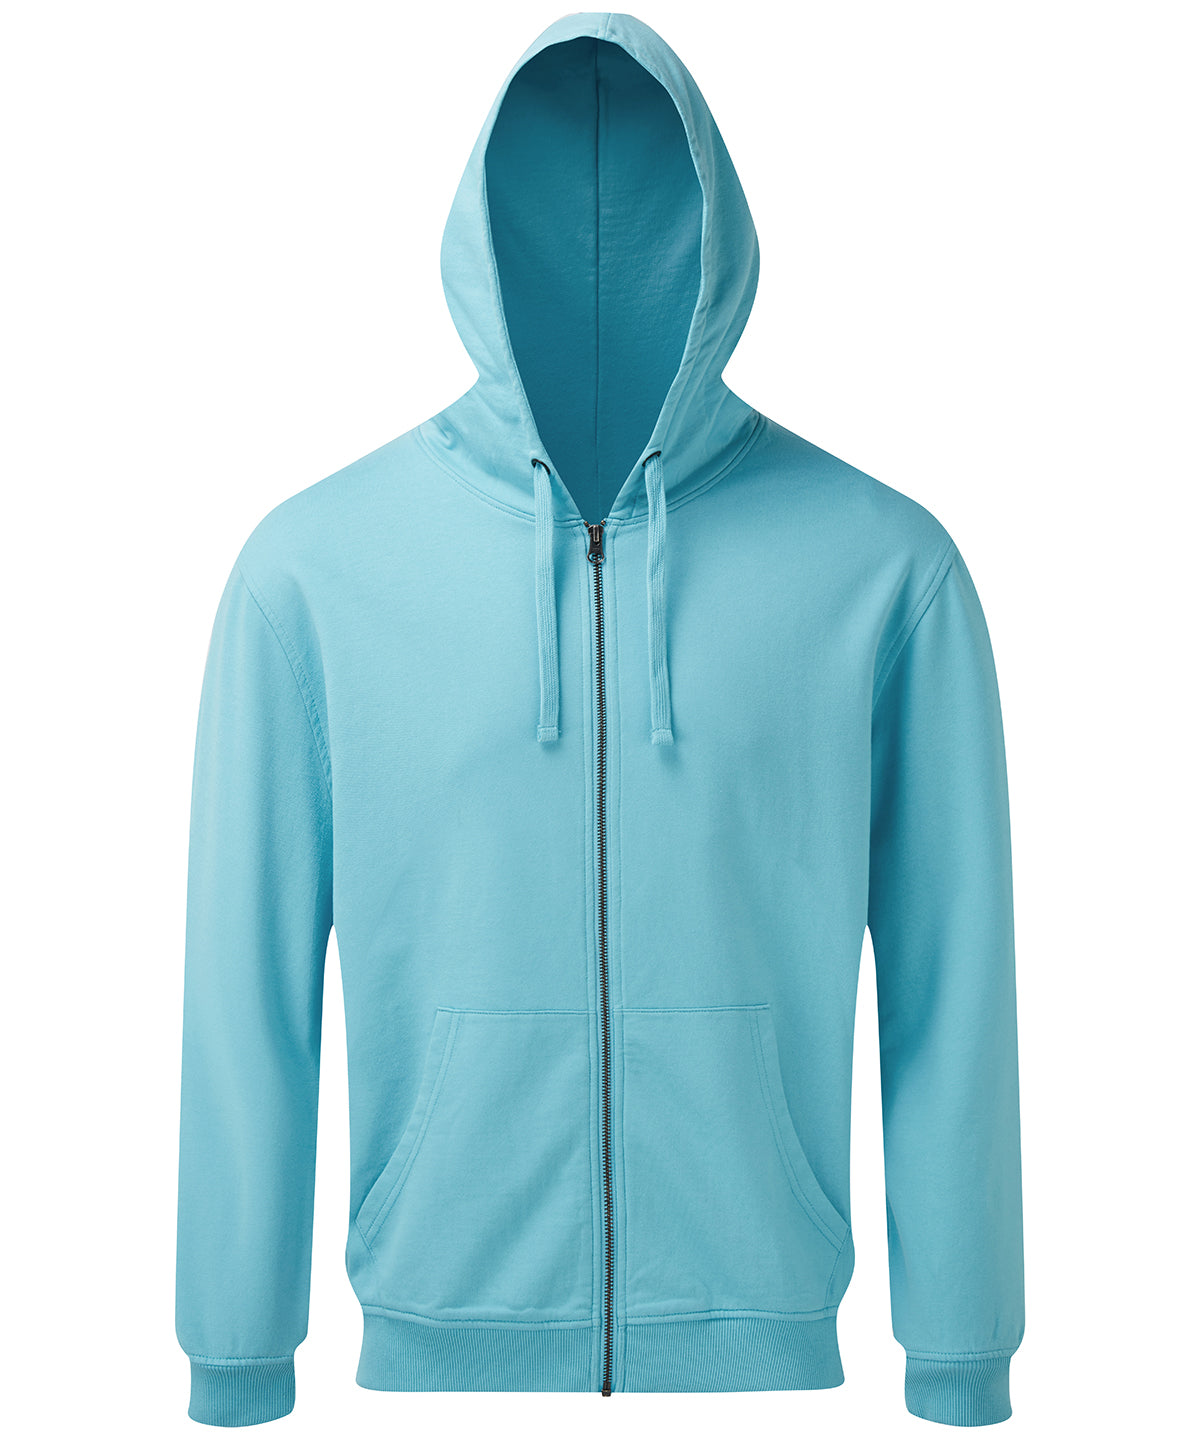 Personalised Hoodies - Turquoise Asquith & Fox Men's coastal vintage wash loop back zip through hoodie